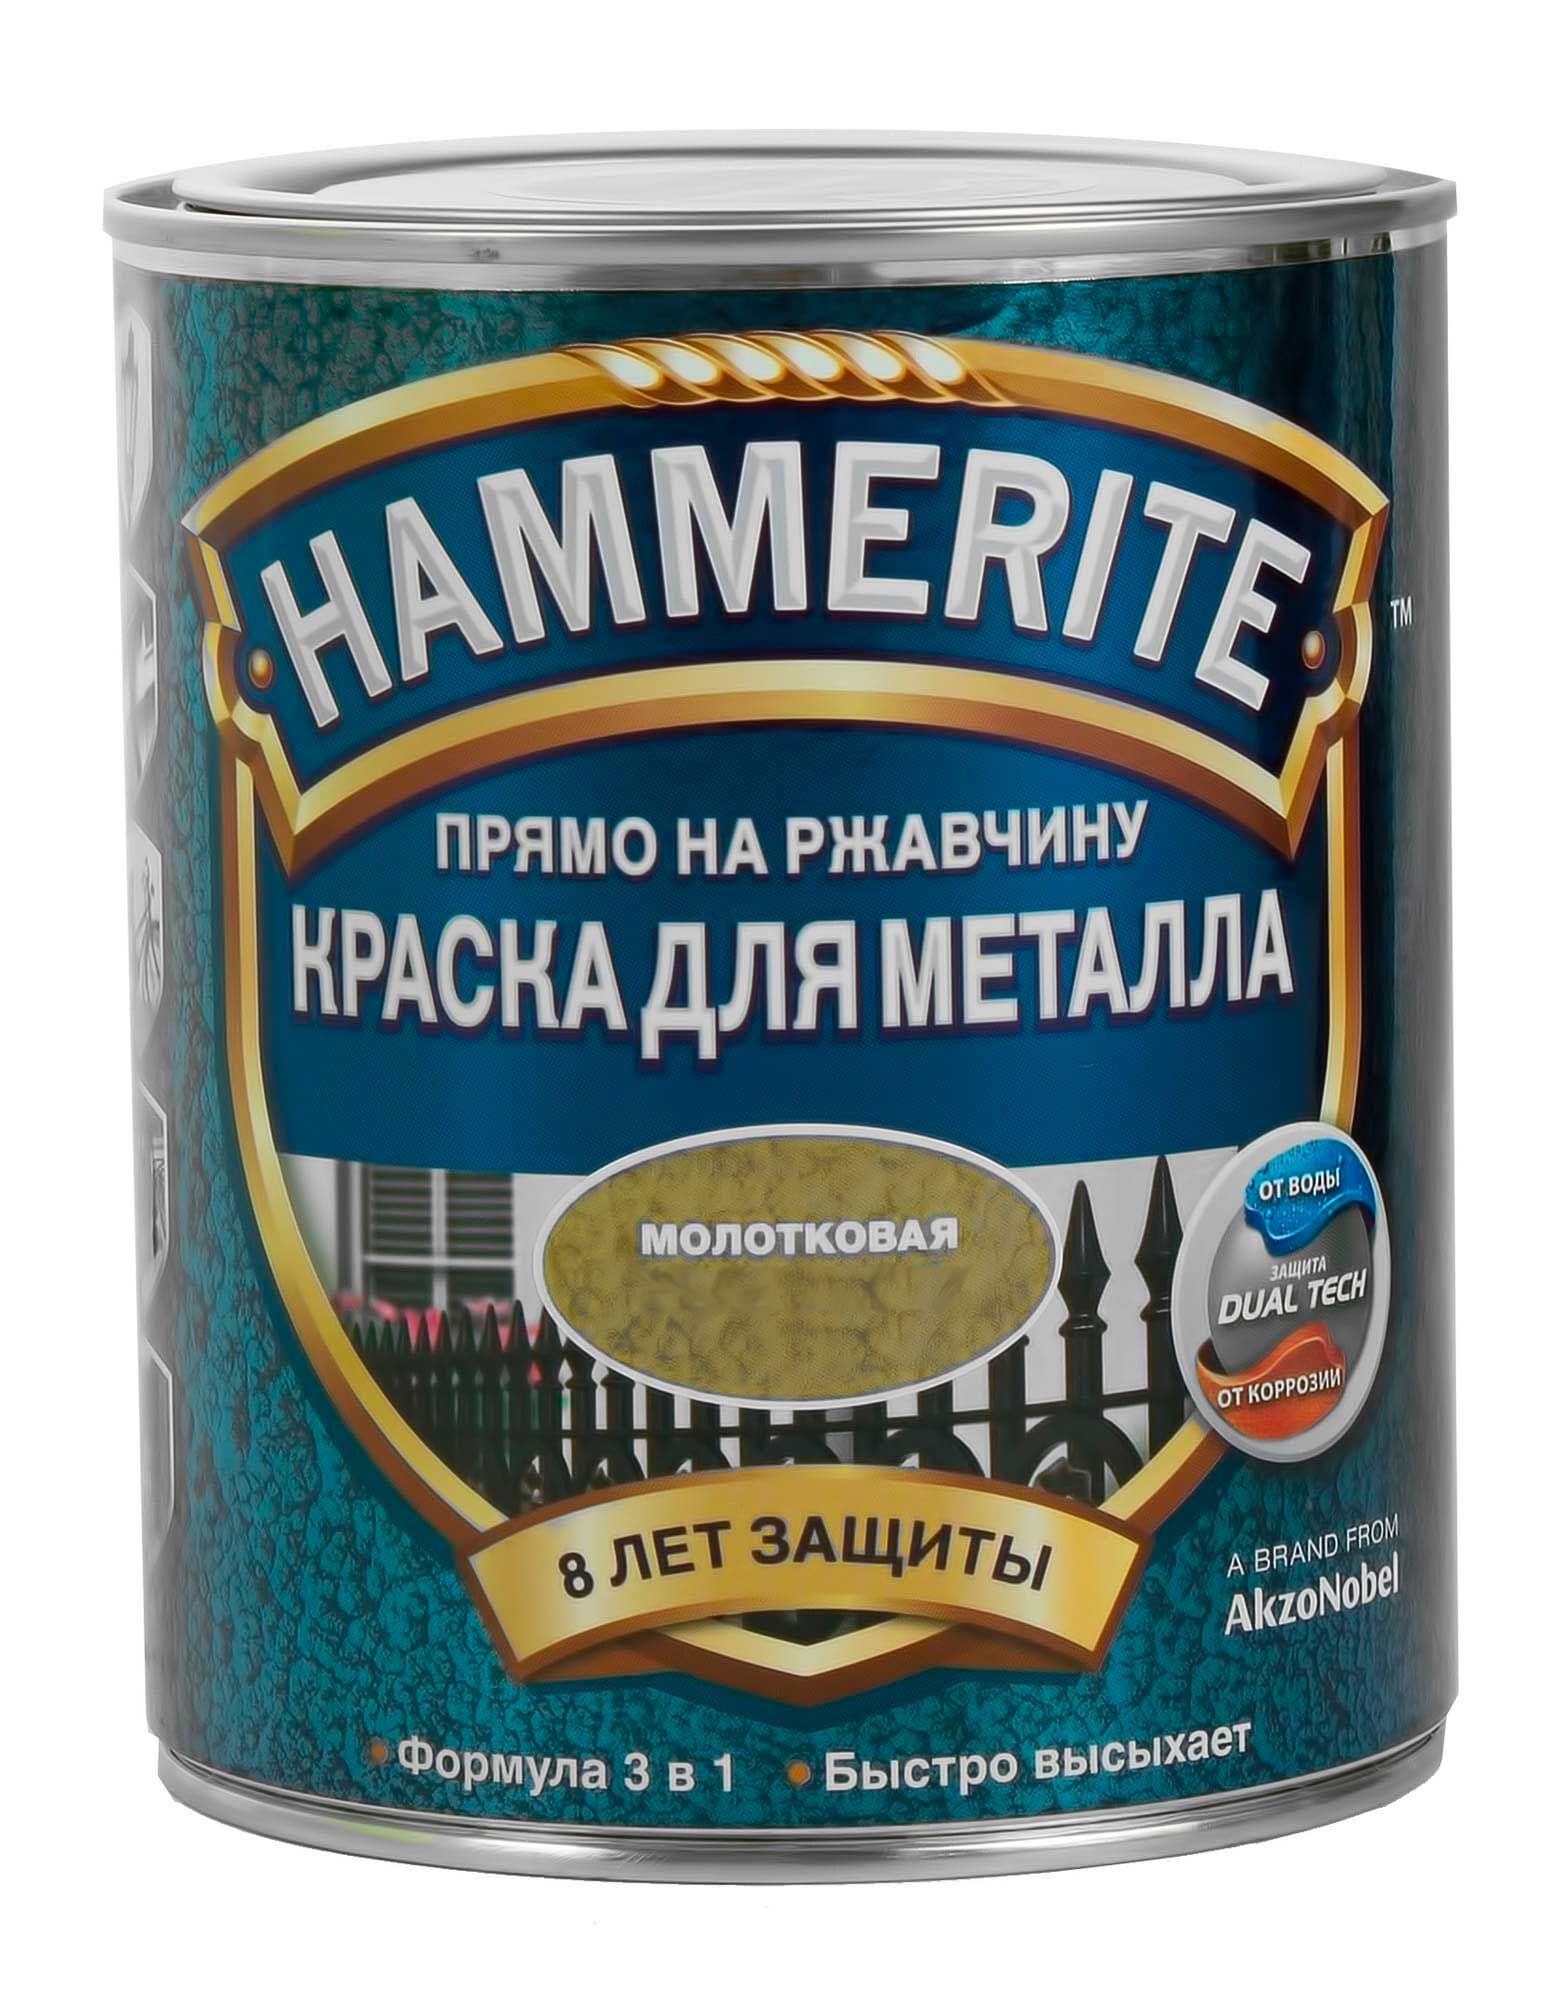 Hammerite краска алкидная для металлических поверхностей молотковая серебристо-серая (0,75л) 5093610